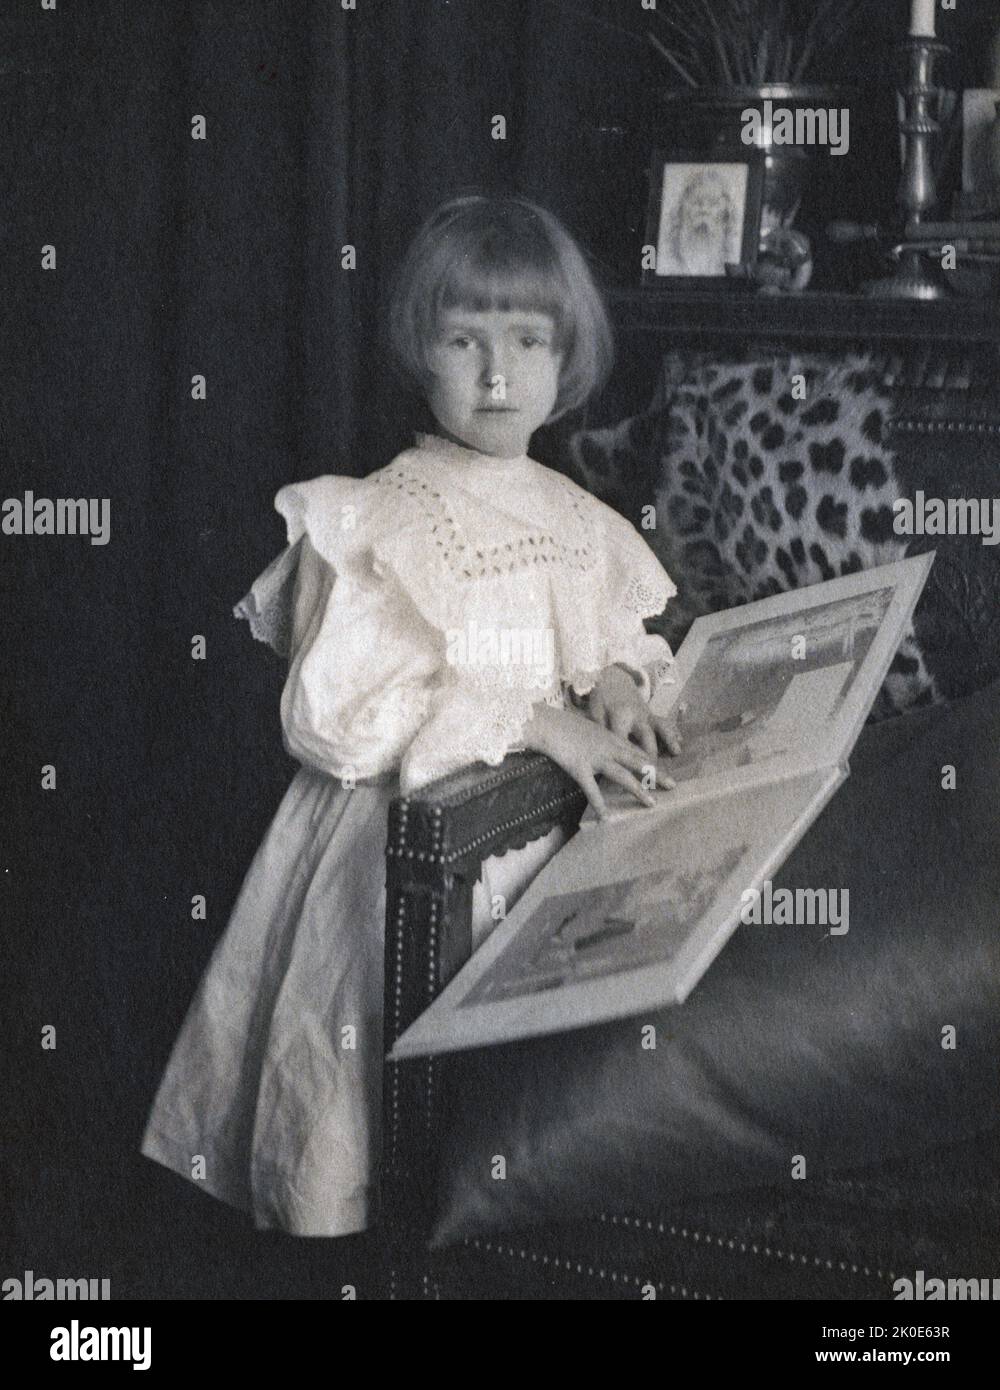 Peggy Lee, c1905 ans, par Fred Holland Day (1864--1933), photographe et éditeur américain. Il a été éminent dans les cercles littéraires et photographiques à la fin du 19th siècle et a été un grand Pictorialiste. Il a été un défenseur précoce et vocal de l'acceptation de la photographie comme un bel art Banque D'Images